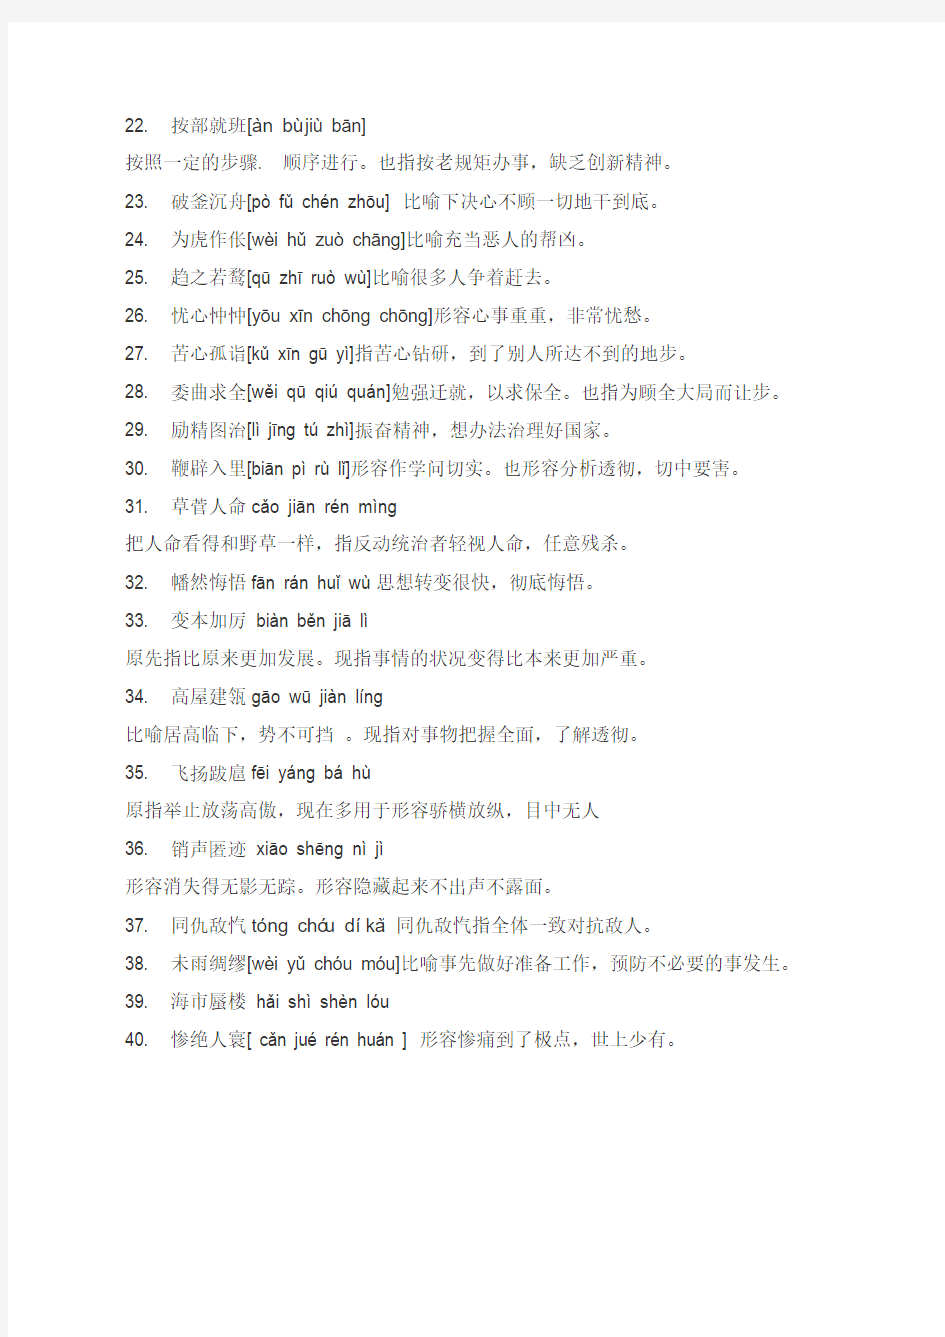 2015年小学生汉字听写大赛词语集锦(成语、词语-两类)